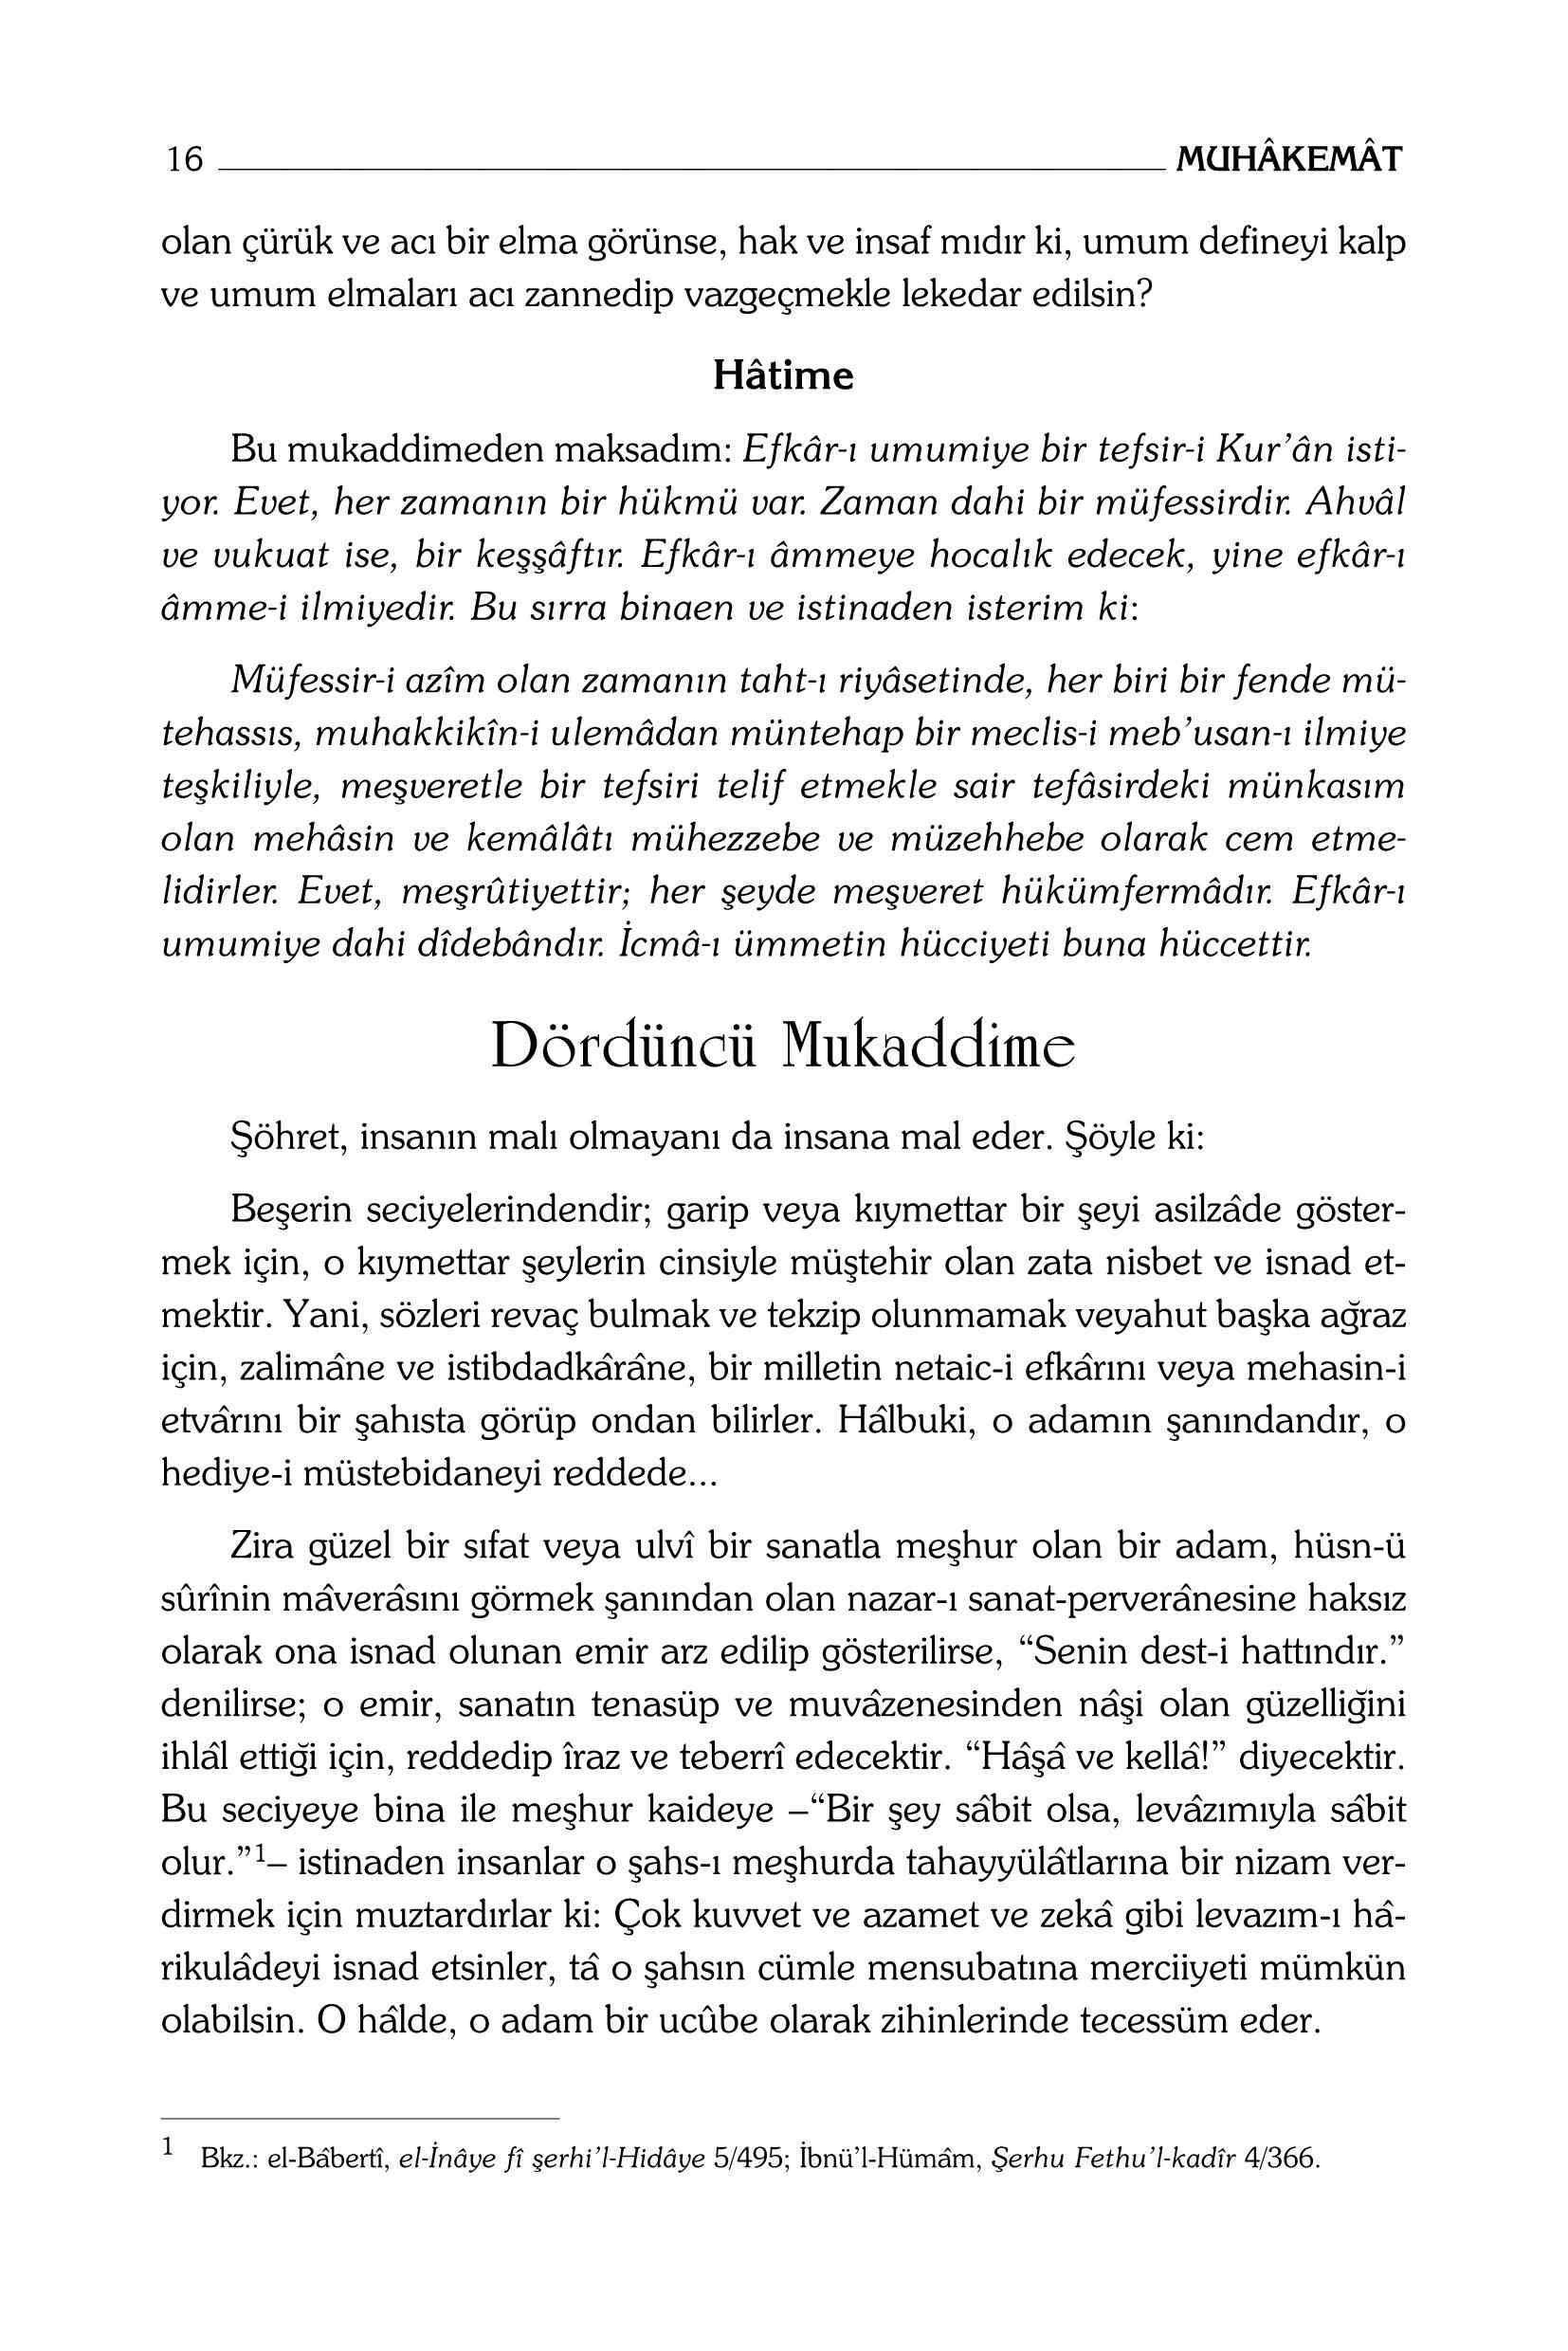 B Said Nursi - Muhakemat - SahdamarY.pdf, 144-Sayfa 